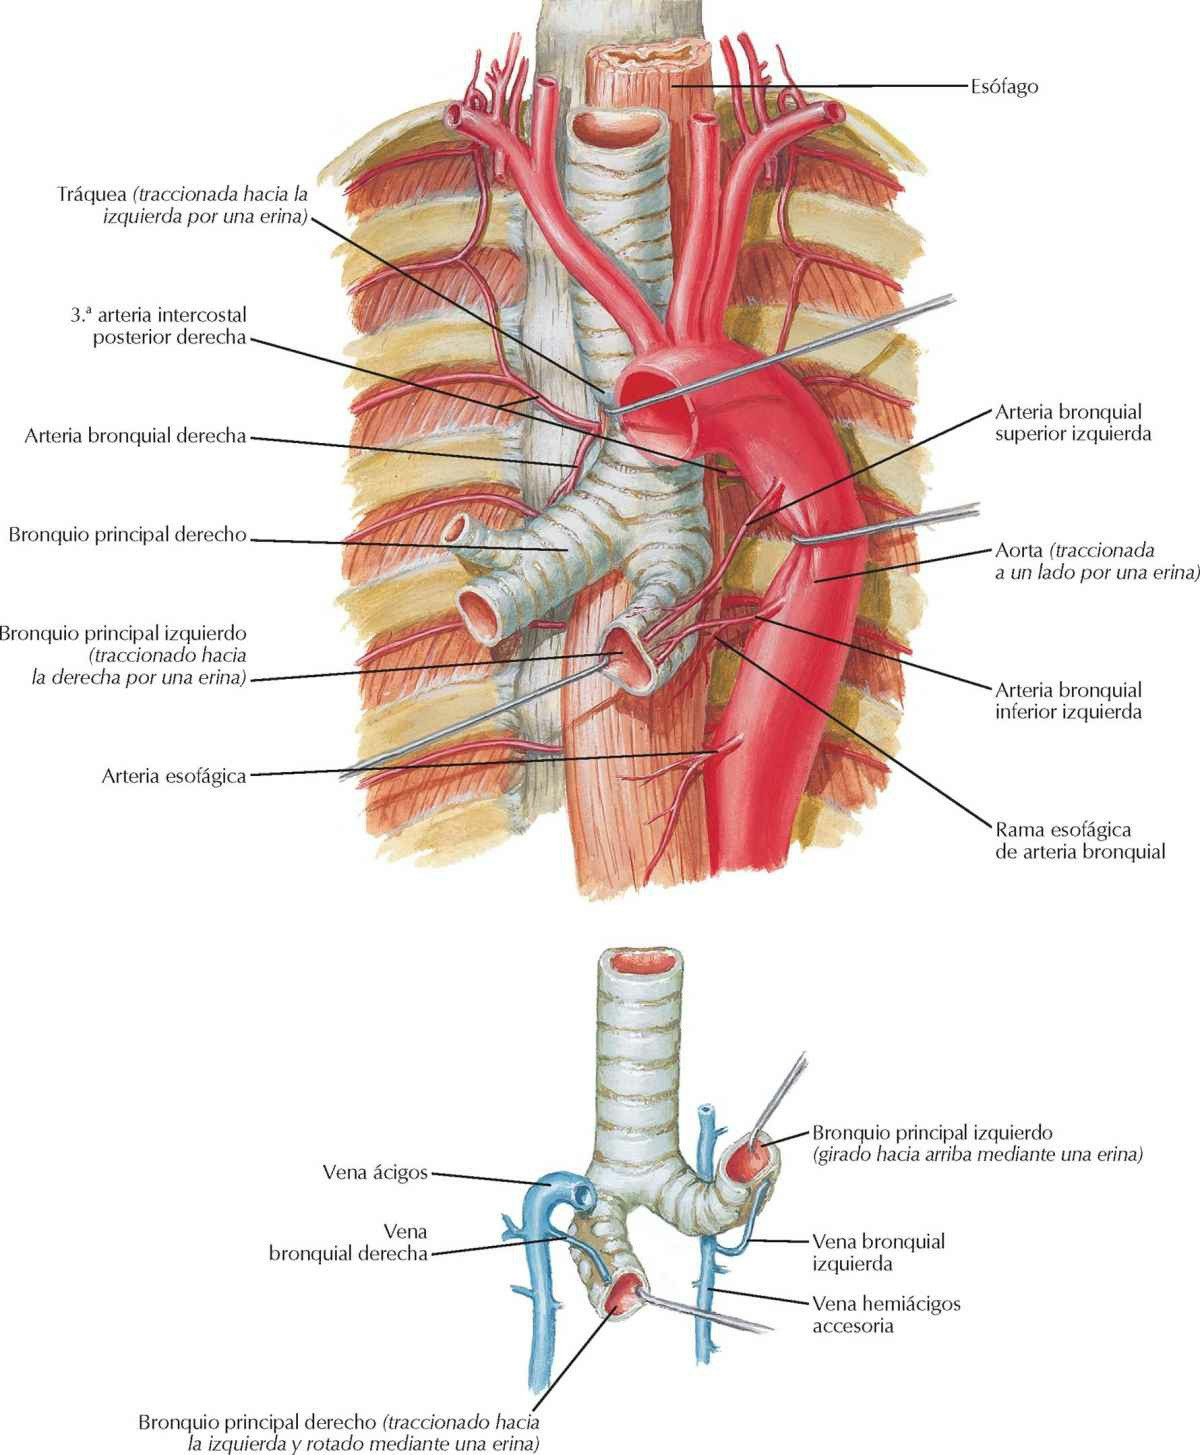 Arterias y venas bronquiales